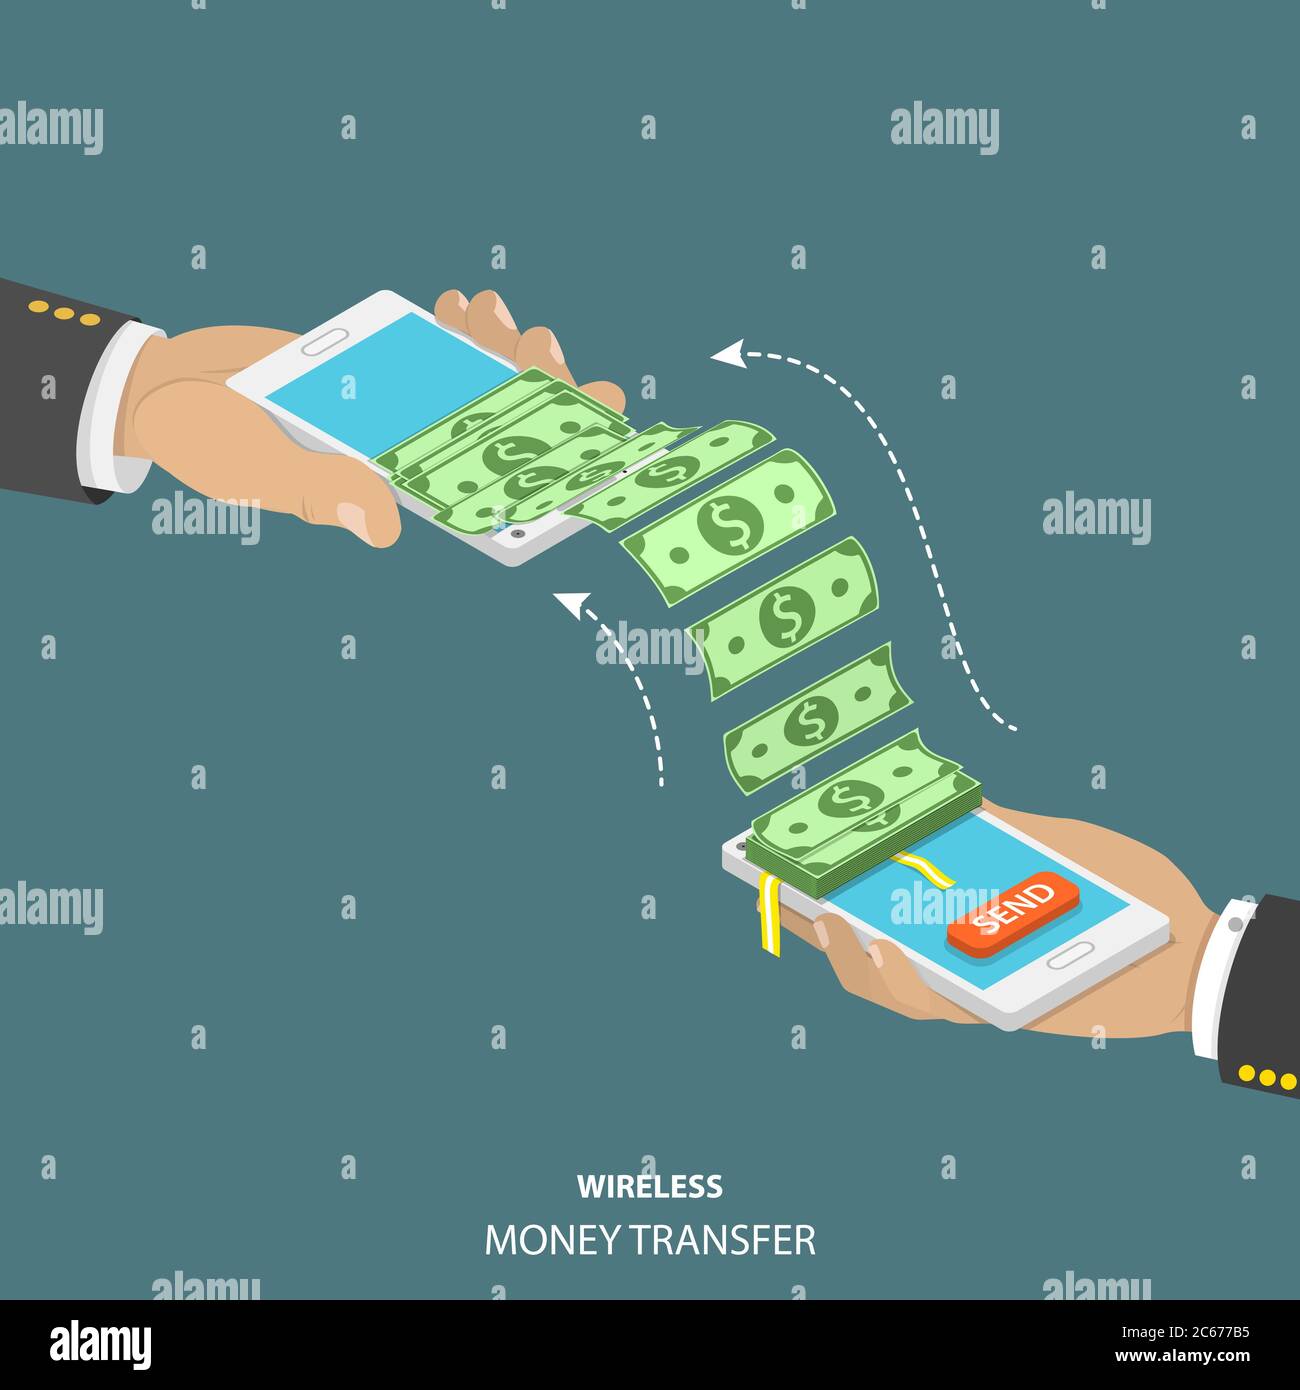 Illustrazione vettoriale isometrica del trasferimento di denaro wireless. Illustrazione Vettoriale